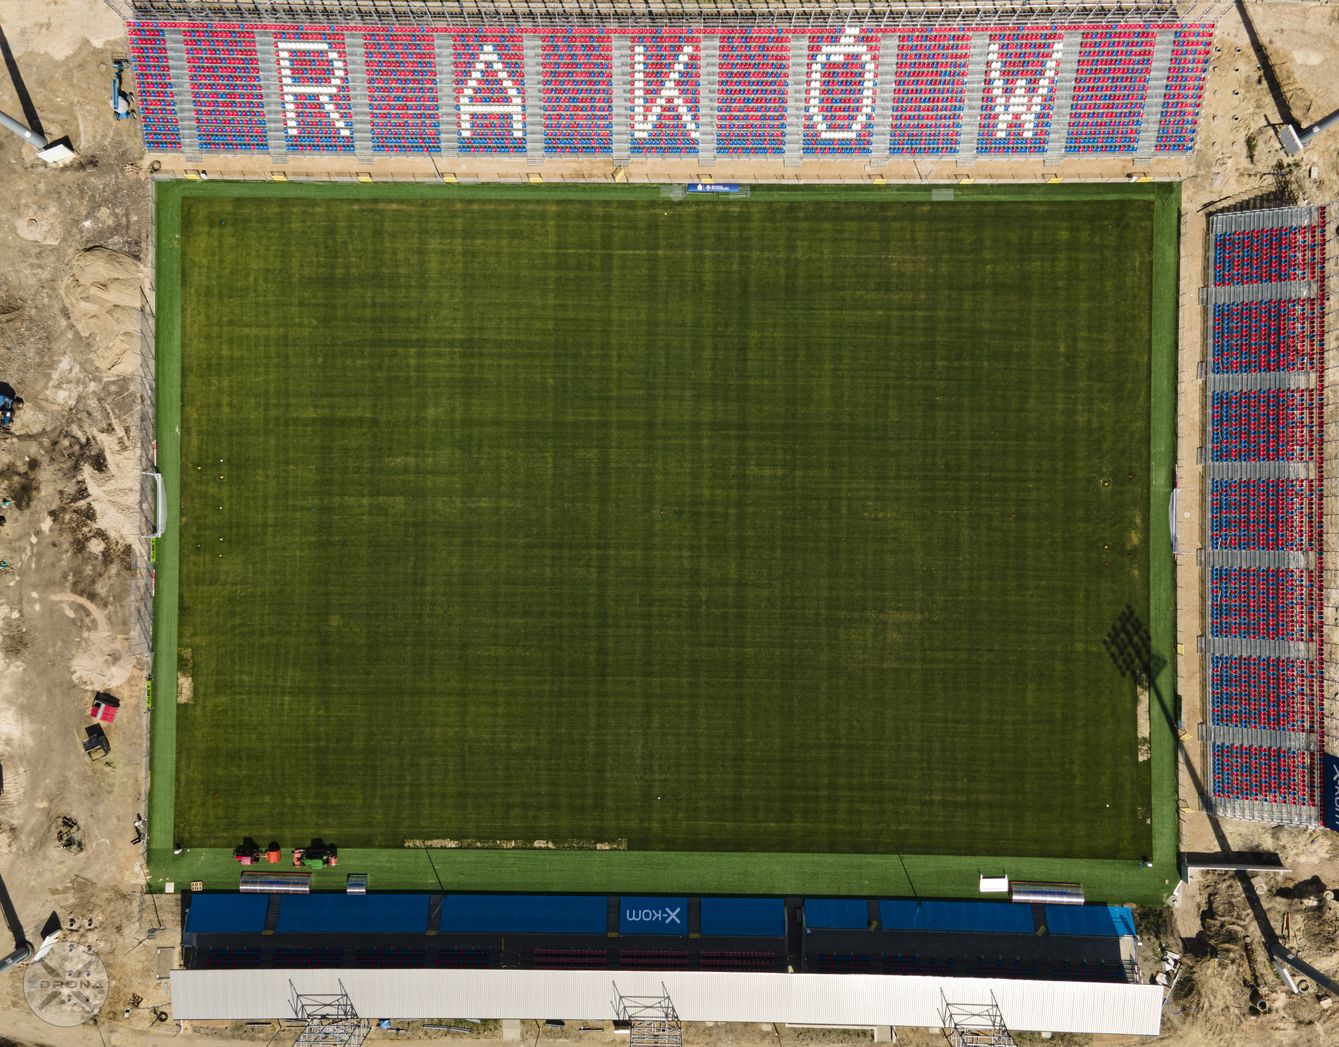 Stadion Rakowa Częstochowa - fotogaleria z budowy